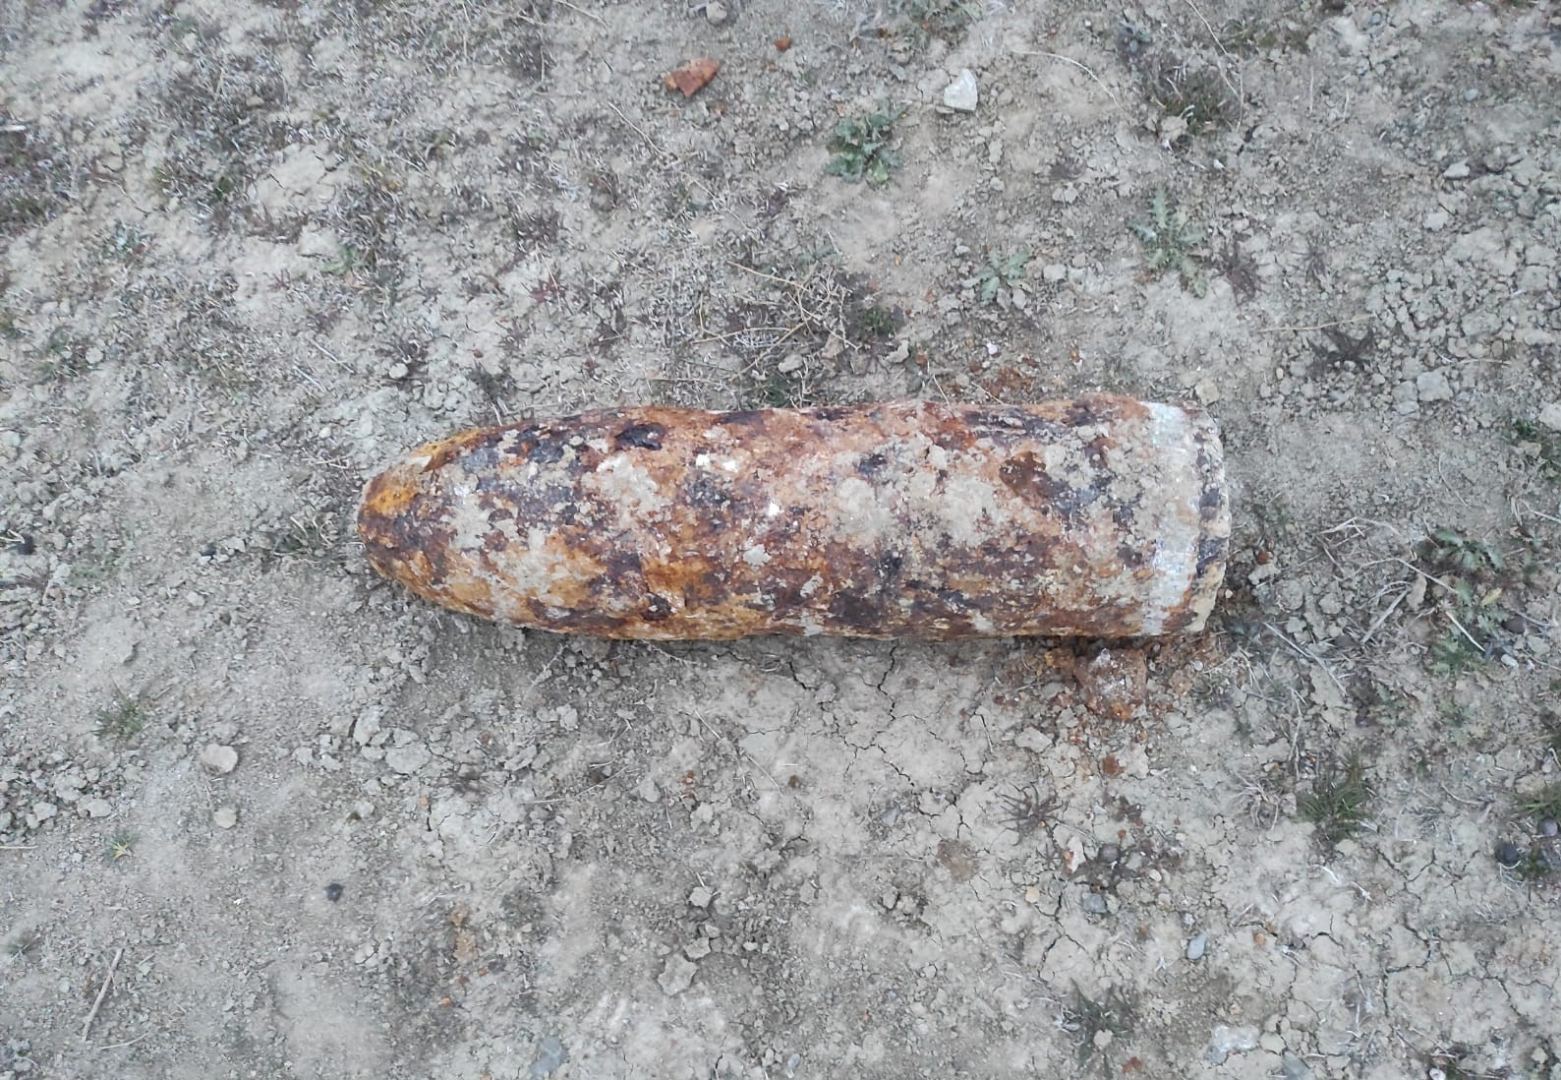 В Масазыре обнаружен артиллерийский снаряд (ФОТО)